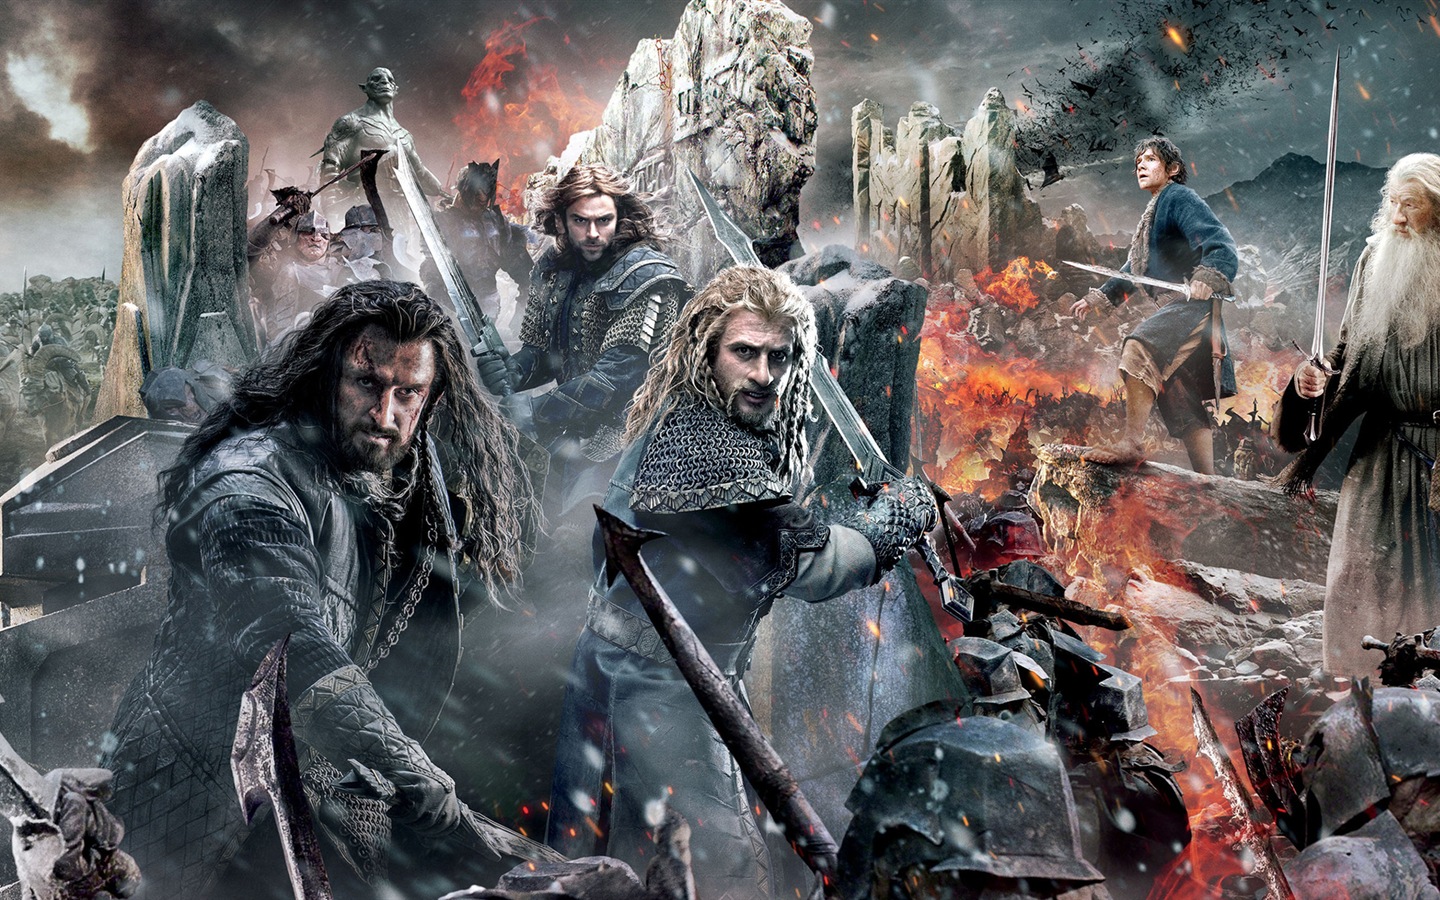 El Hobbit: La Batalla de los Cinco Ejércitos, fondos de pantalla de películas de alta definición #1 - 1440x900